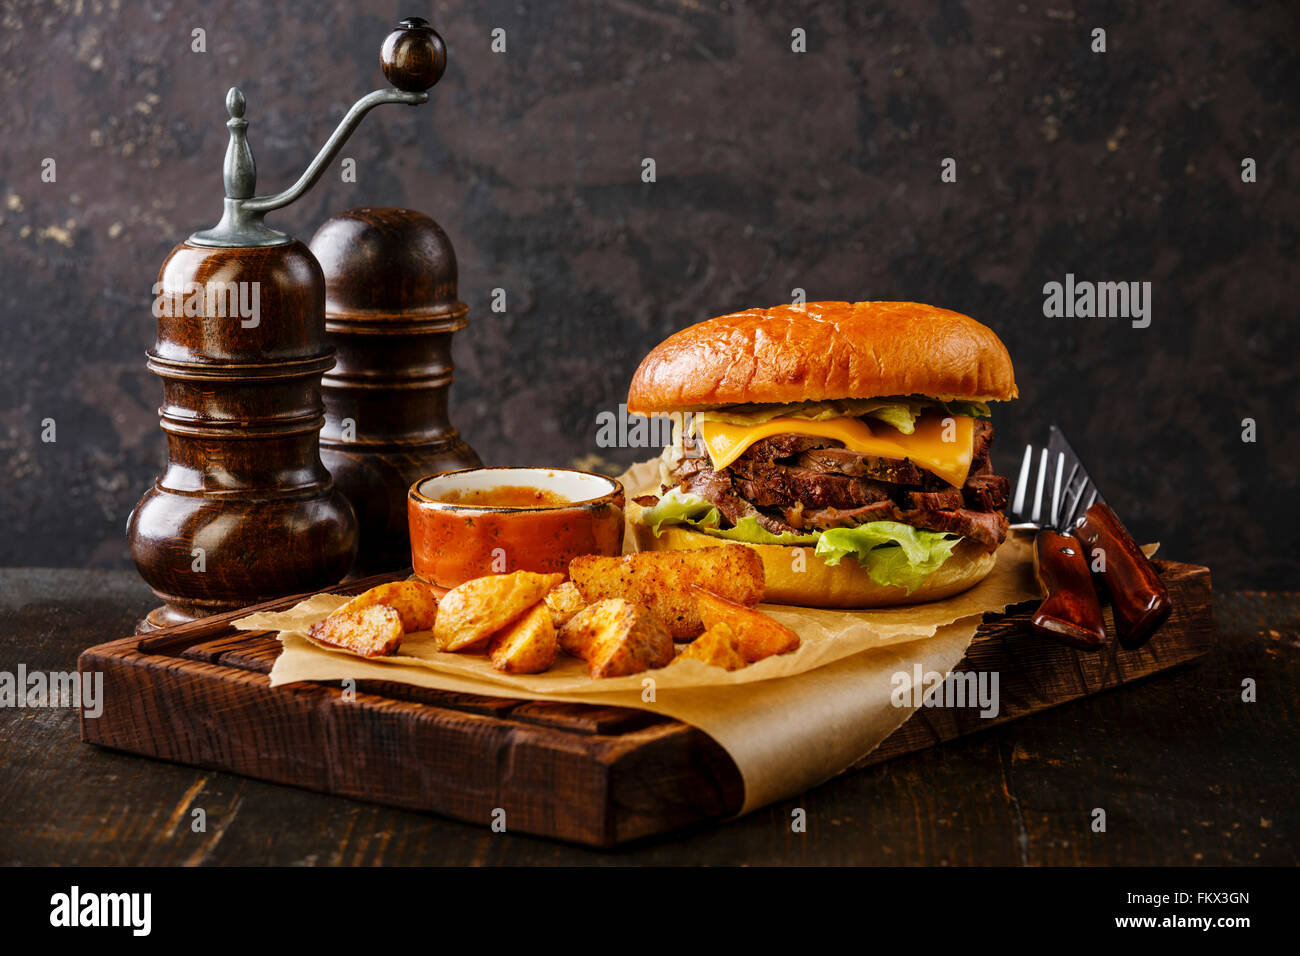 Pastrami-Burger mit in Scheiben geschnittenen Braten Rindfleisch und Kartoffel Wedges auf dunklem Hintergrund Stockfoto